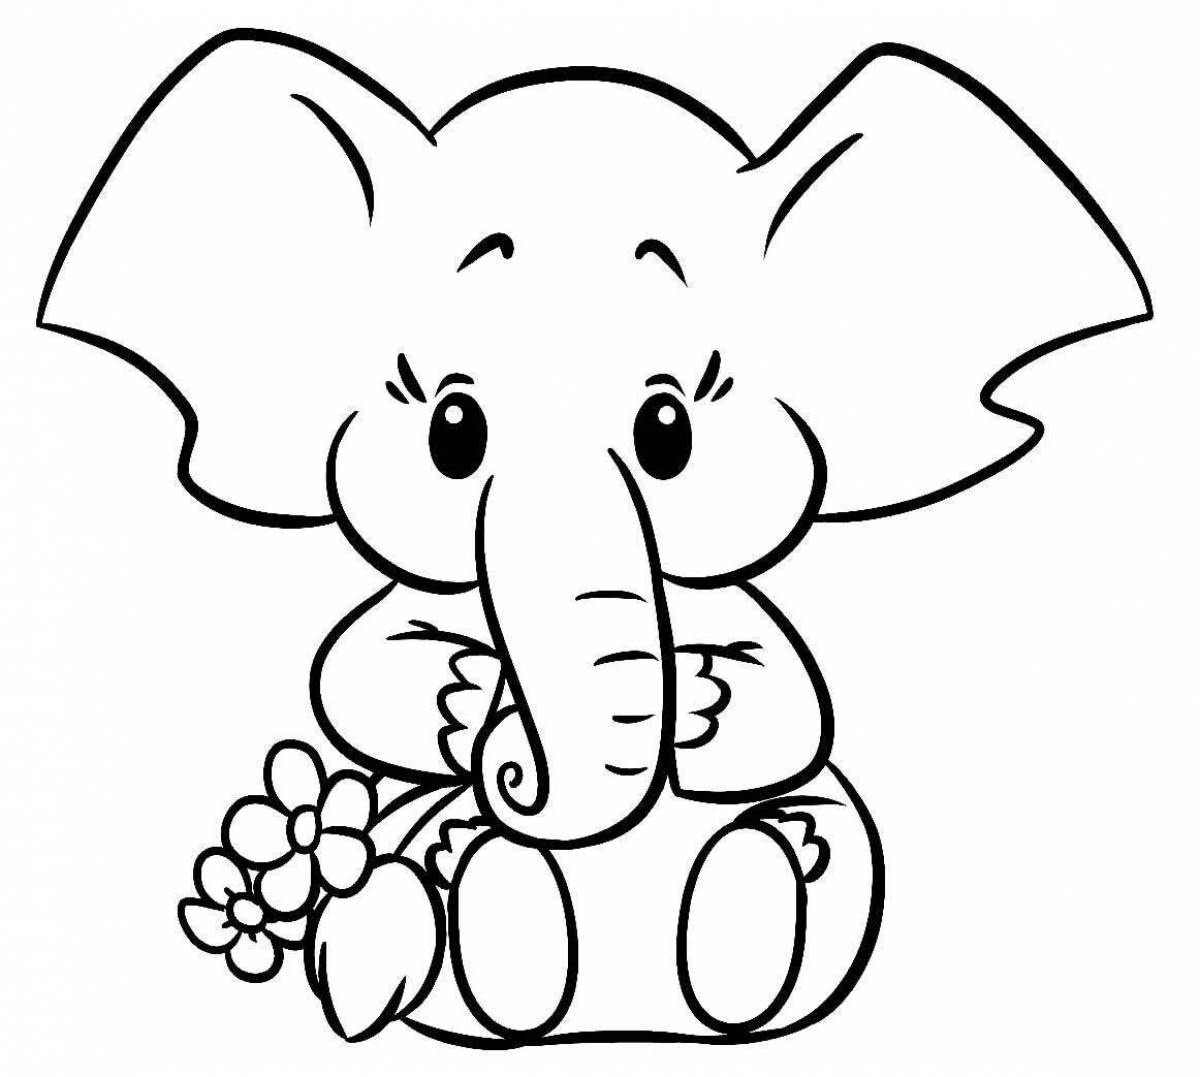 Раскраска яркий слон для детей 3-4 лет